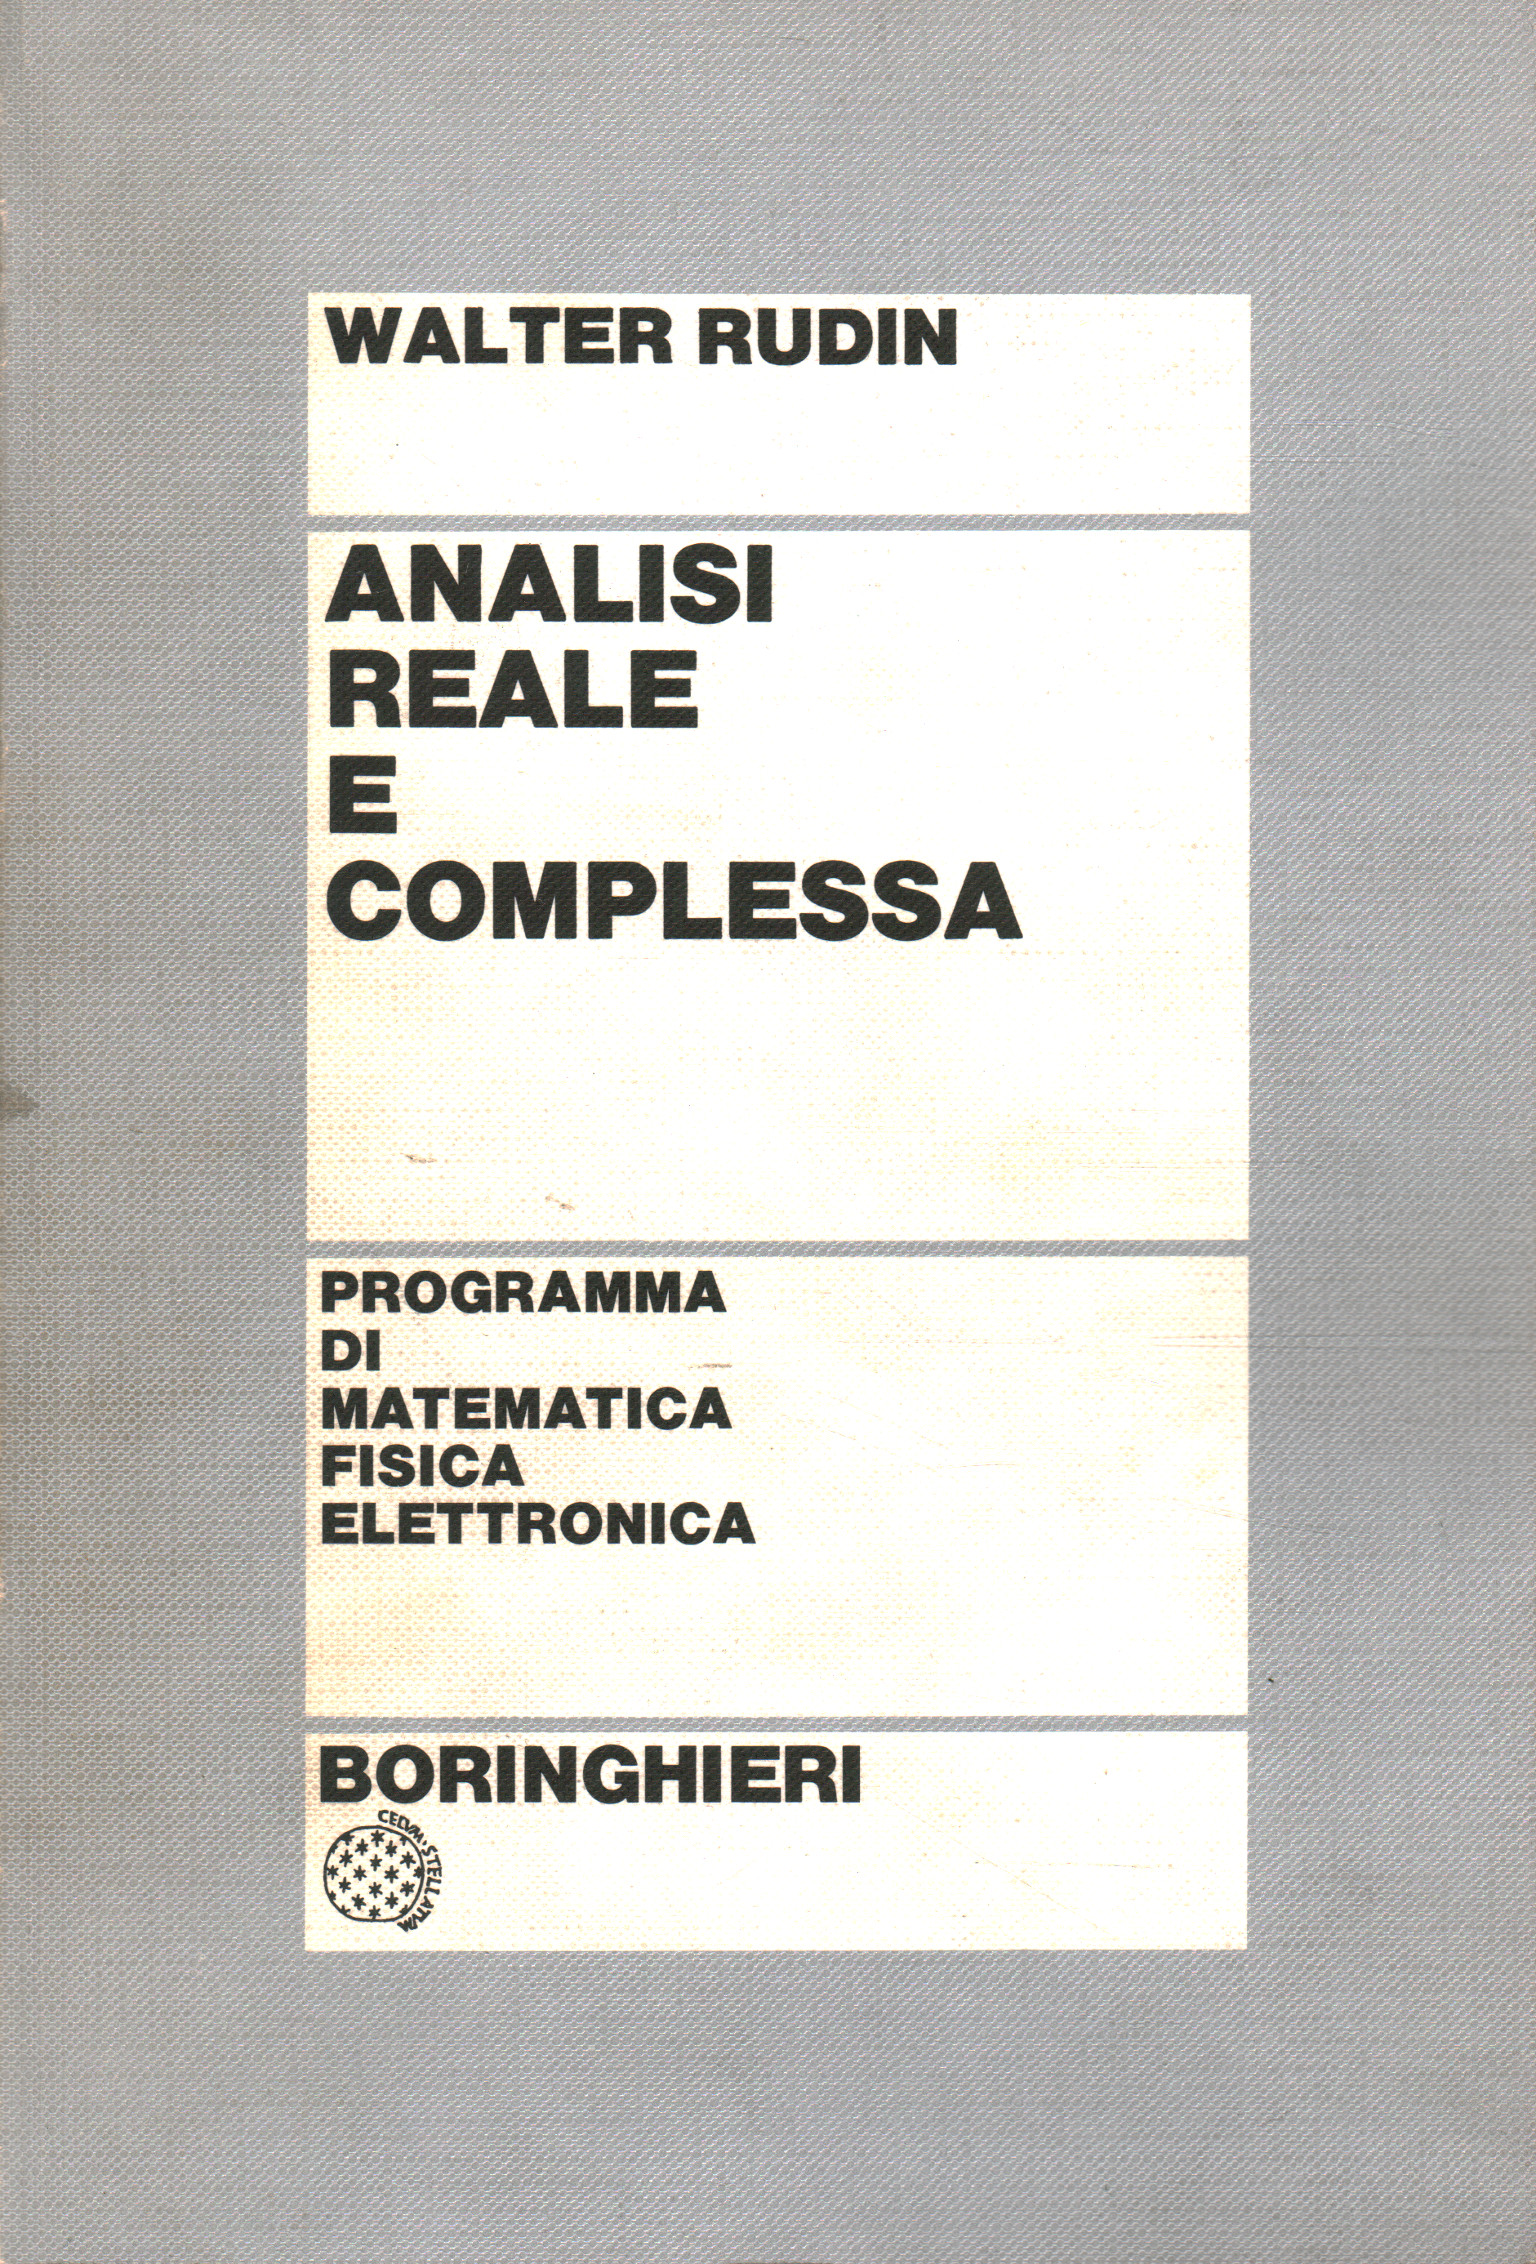 Analisi reale e complessa - Walter Rudin (Boringhieri) [1974]